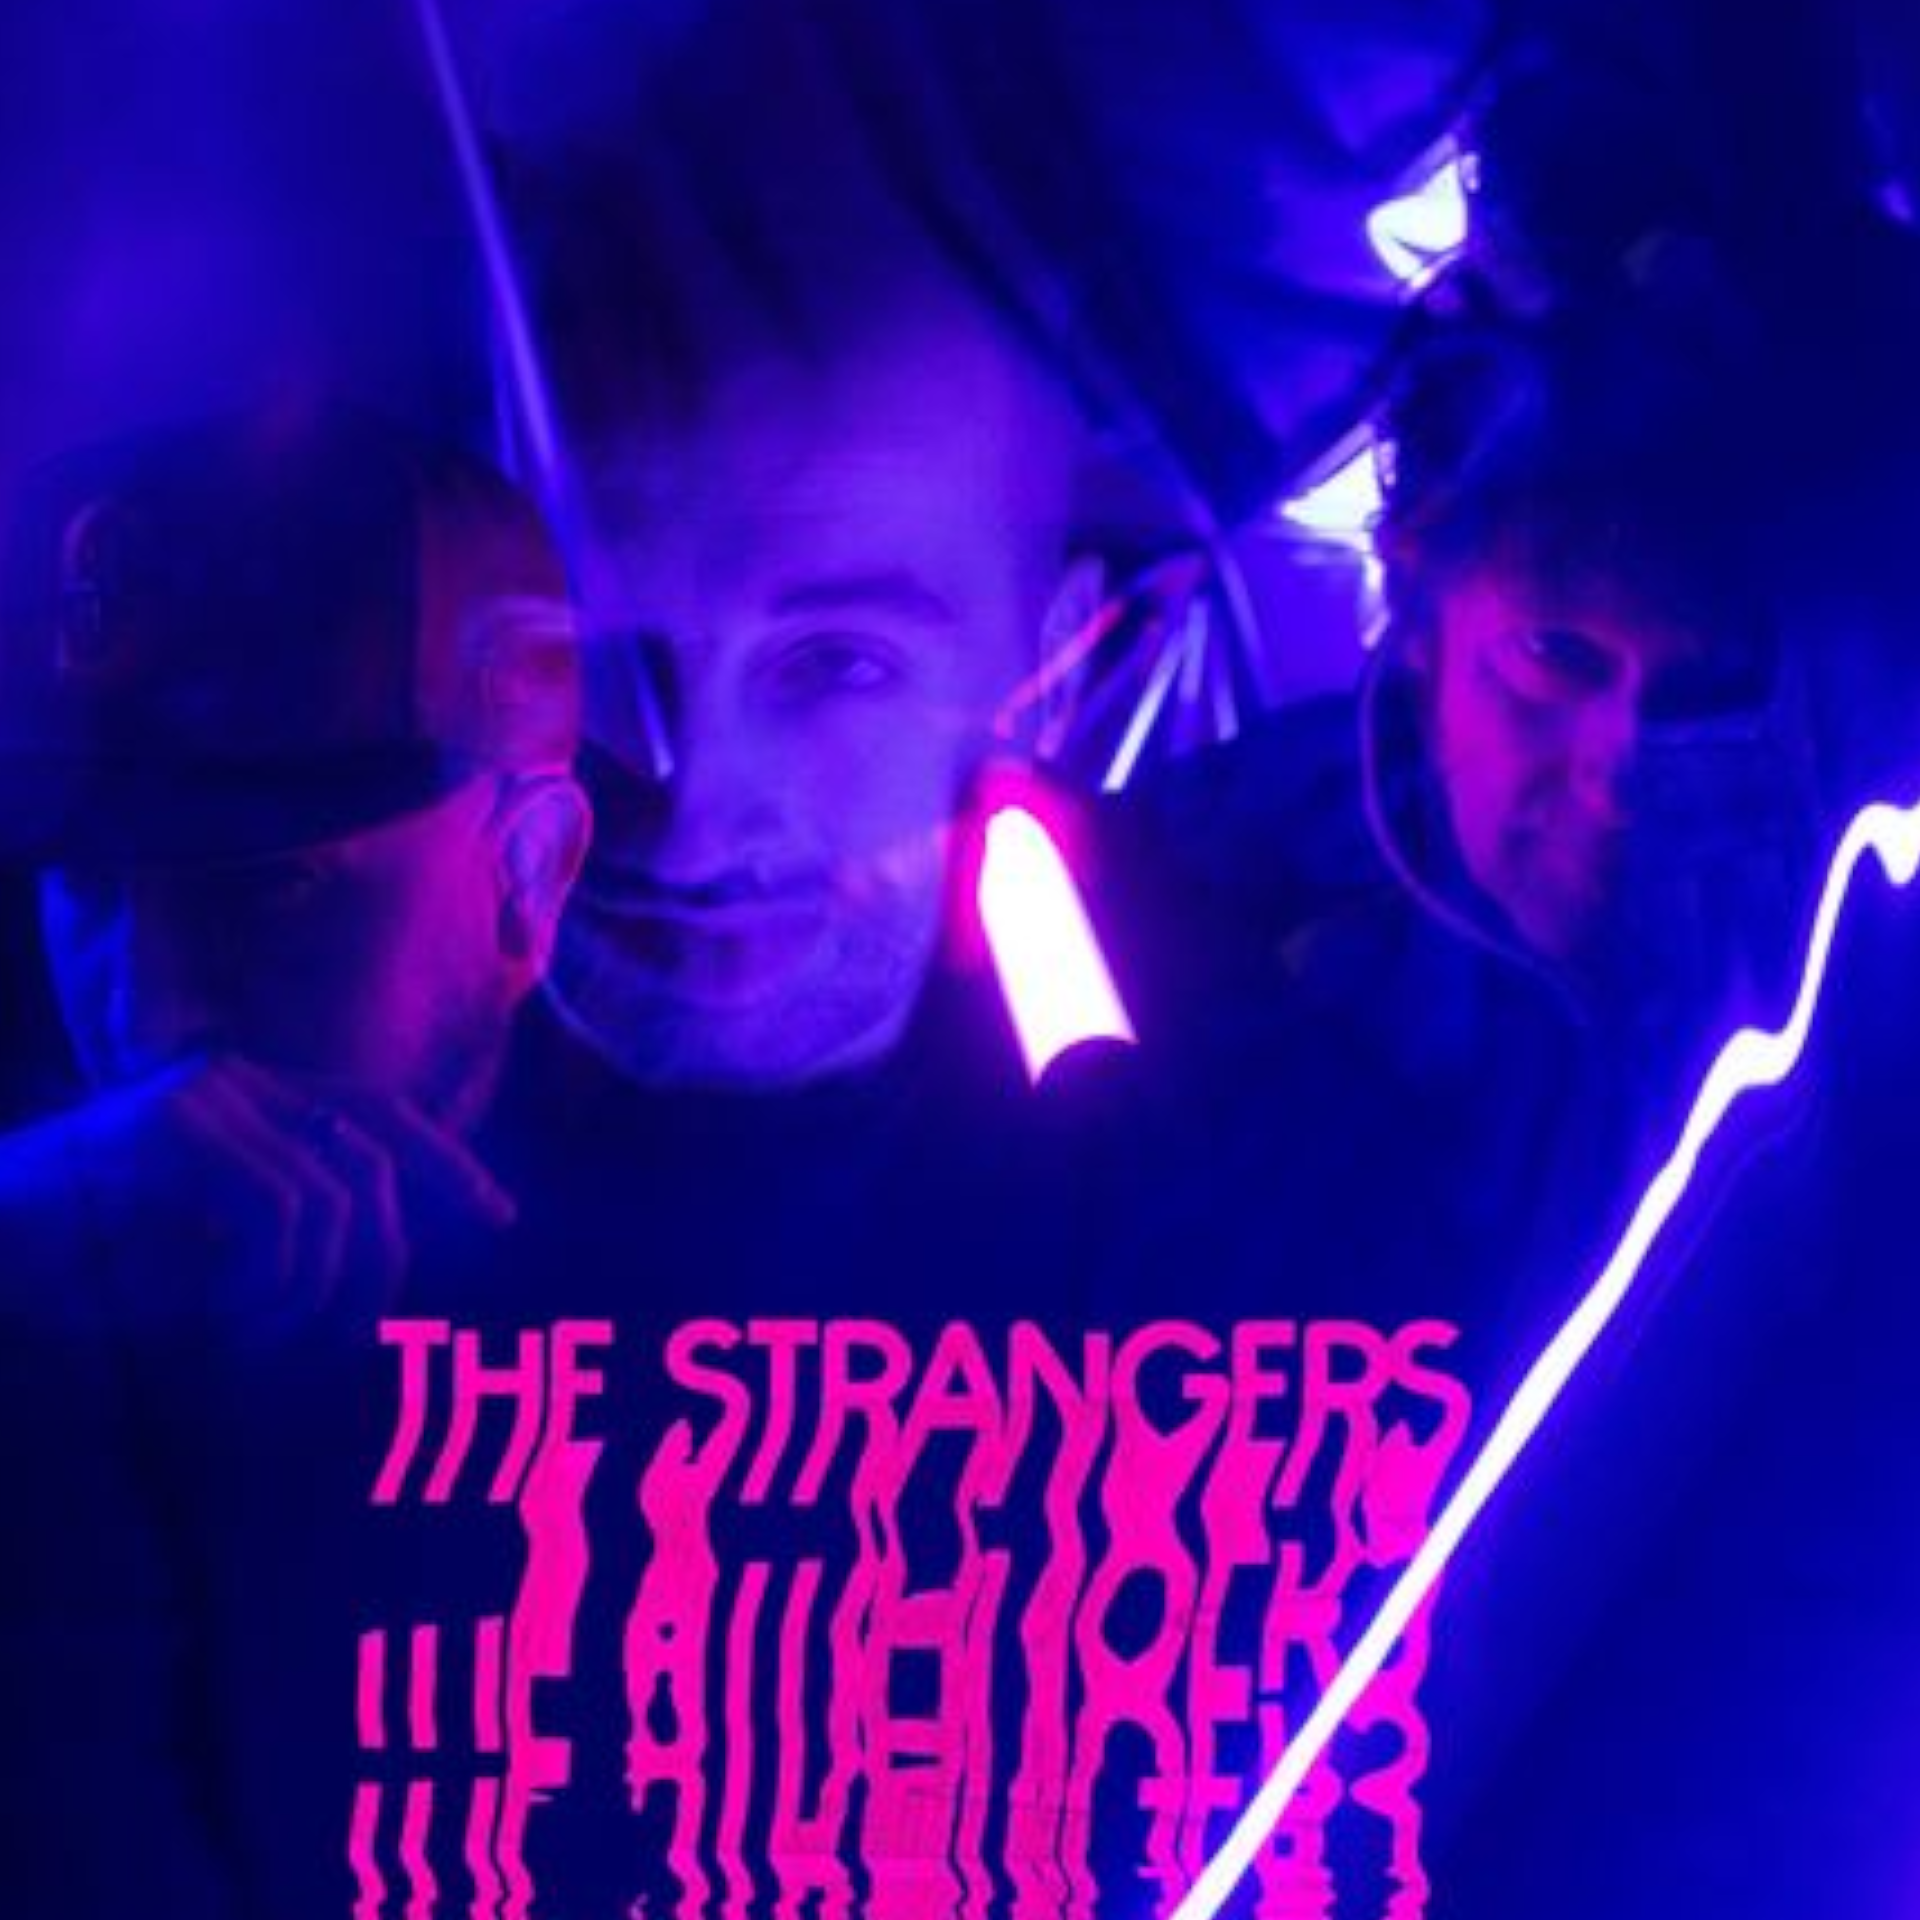 Découvrez l’univers parallèle de The Strangers